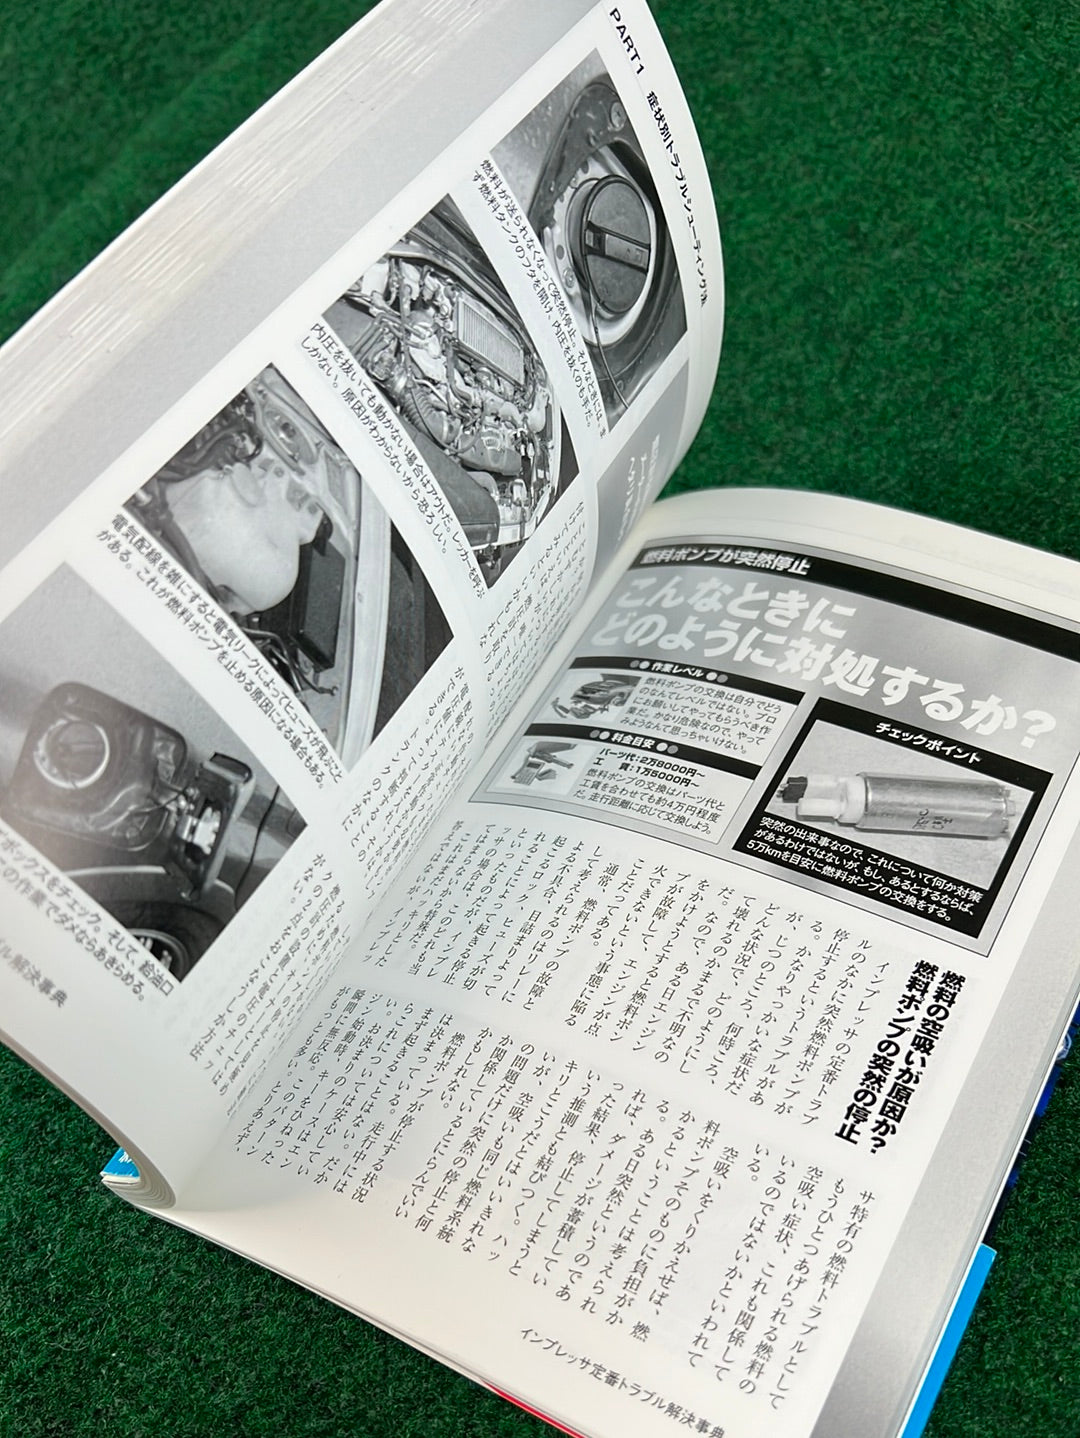 Subaru Impreza WRX Car Review and Maintenance Book Set of 2